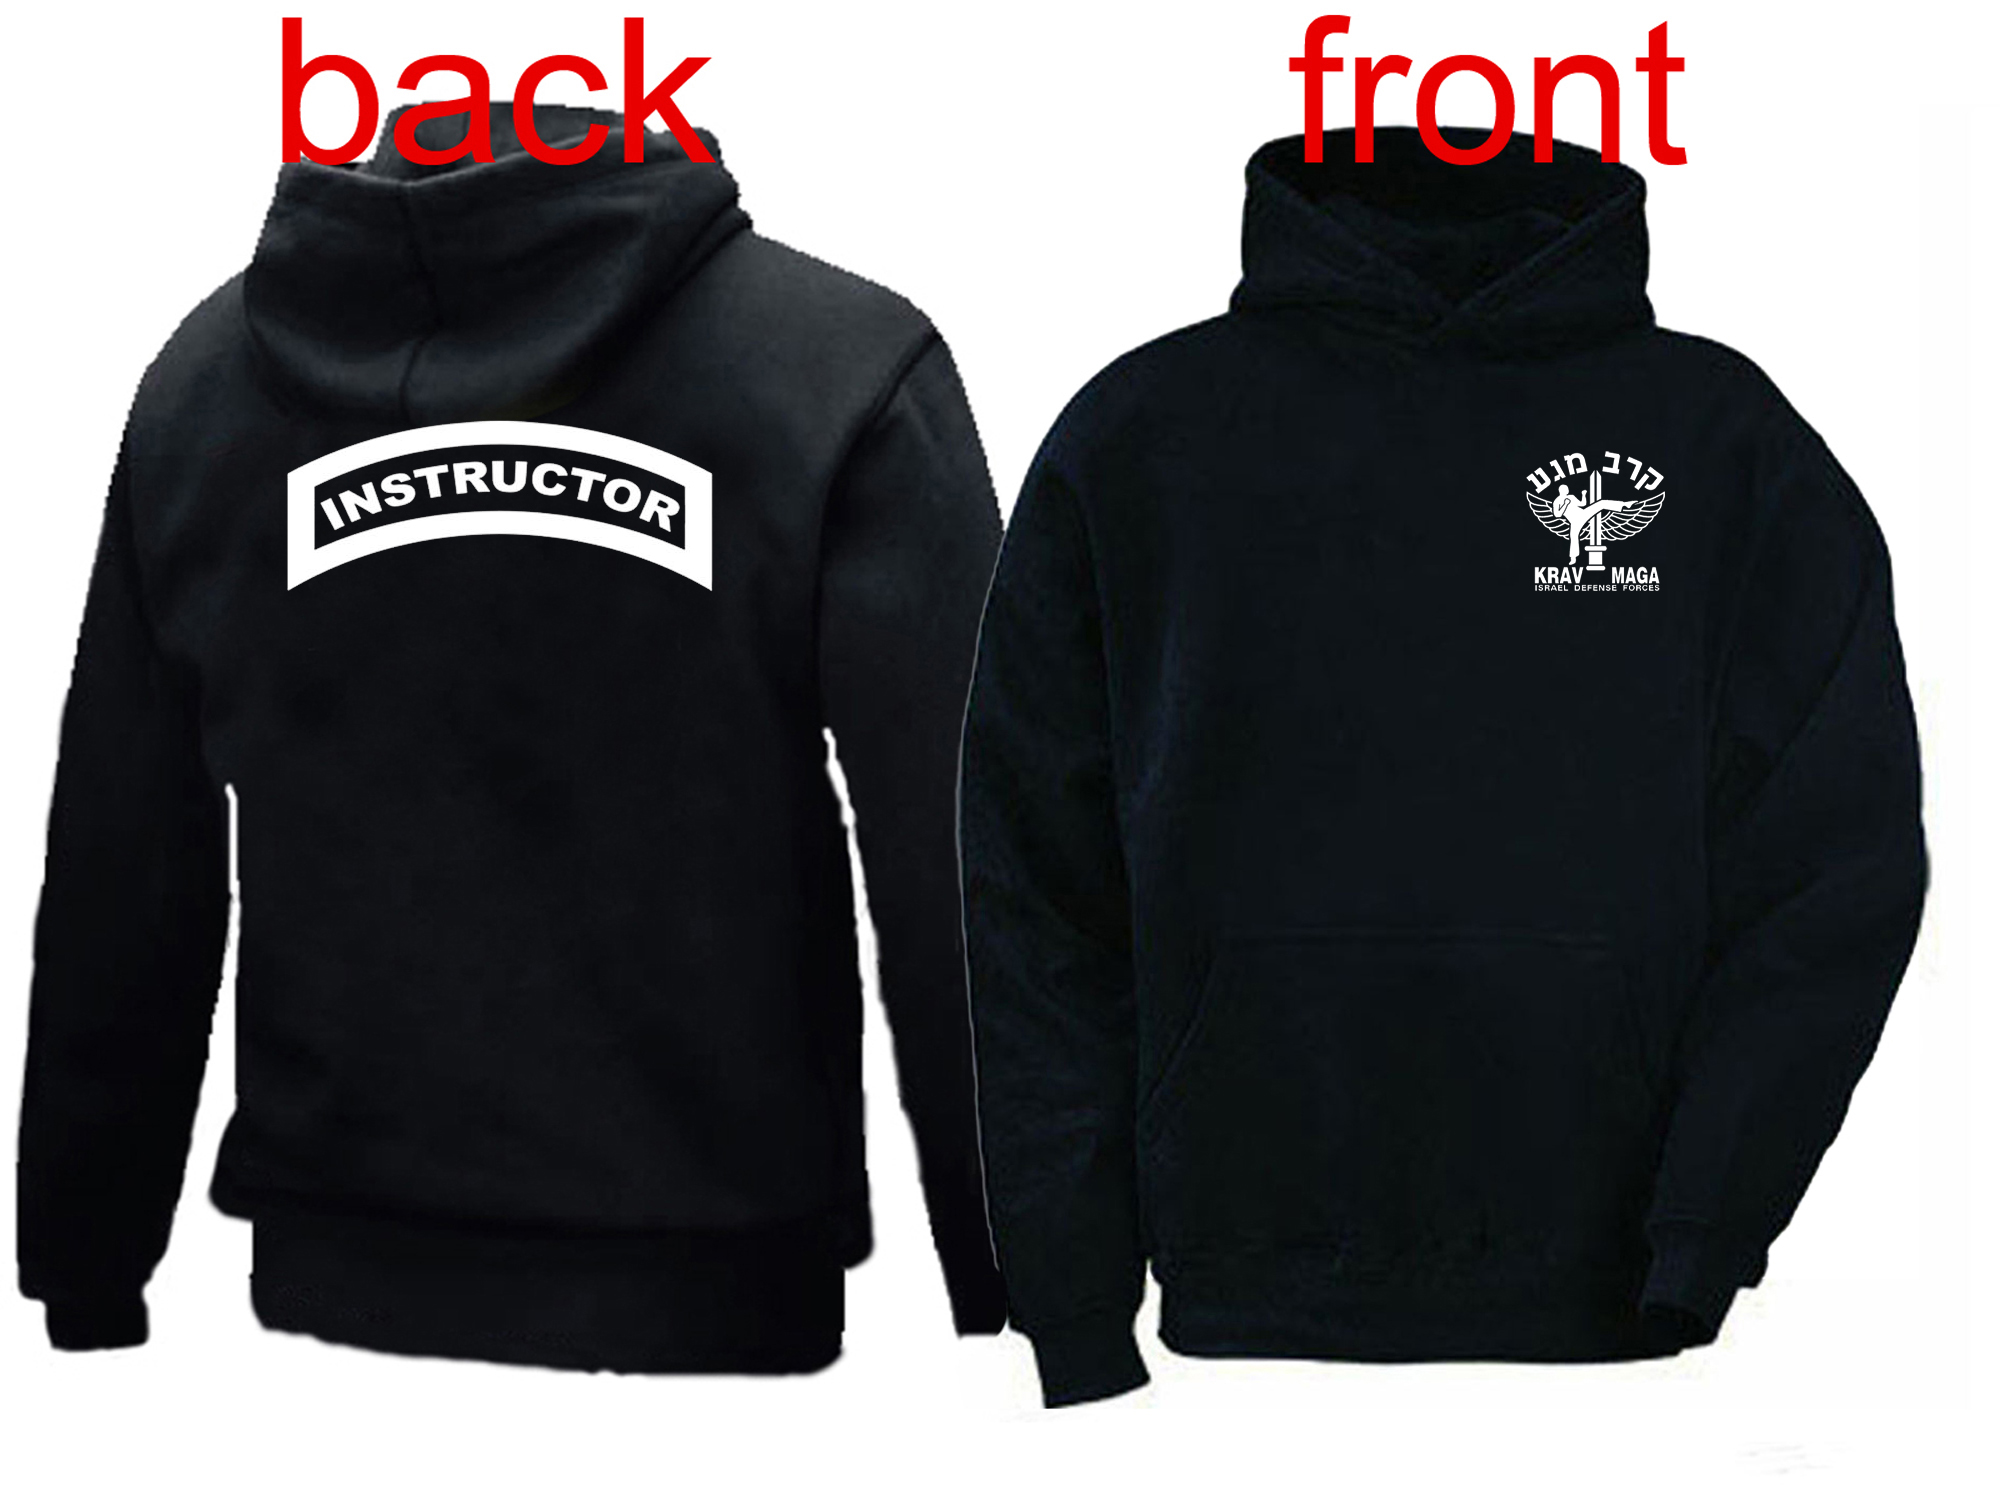 Krav Maga Instructor black hooded sweatshirt